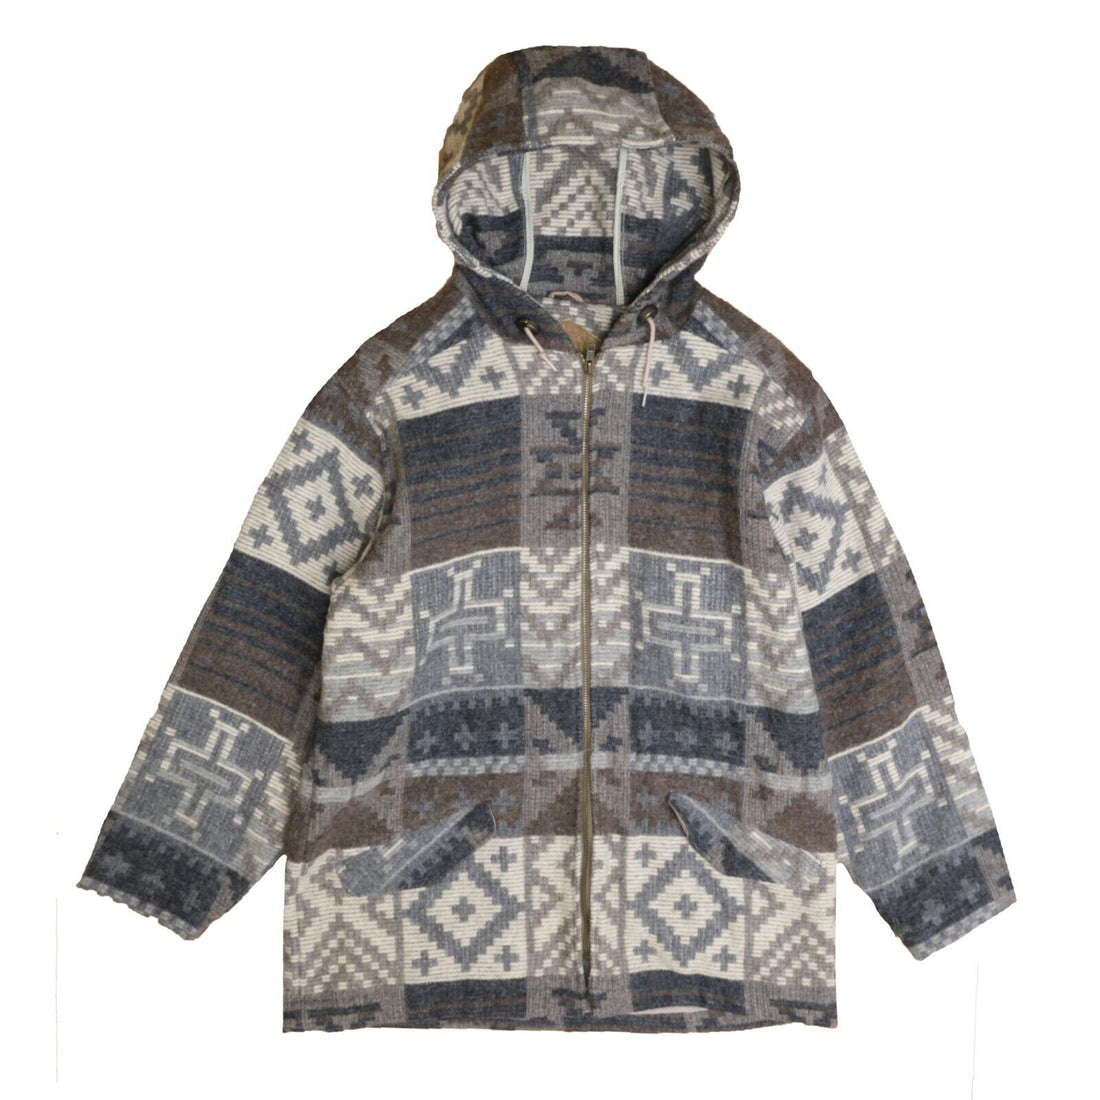 Vintage Woolrich Wool Parka Coat Jacket Size Medium Hooded Aztec